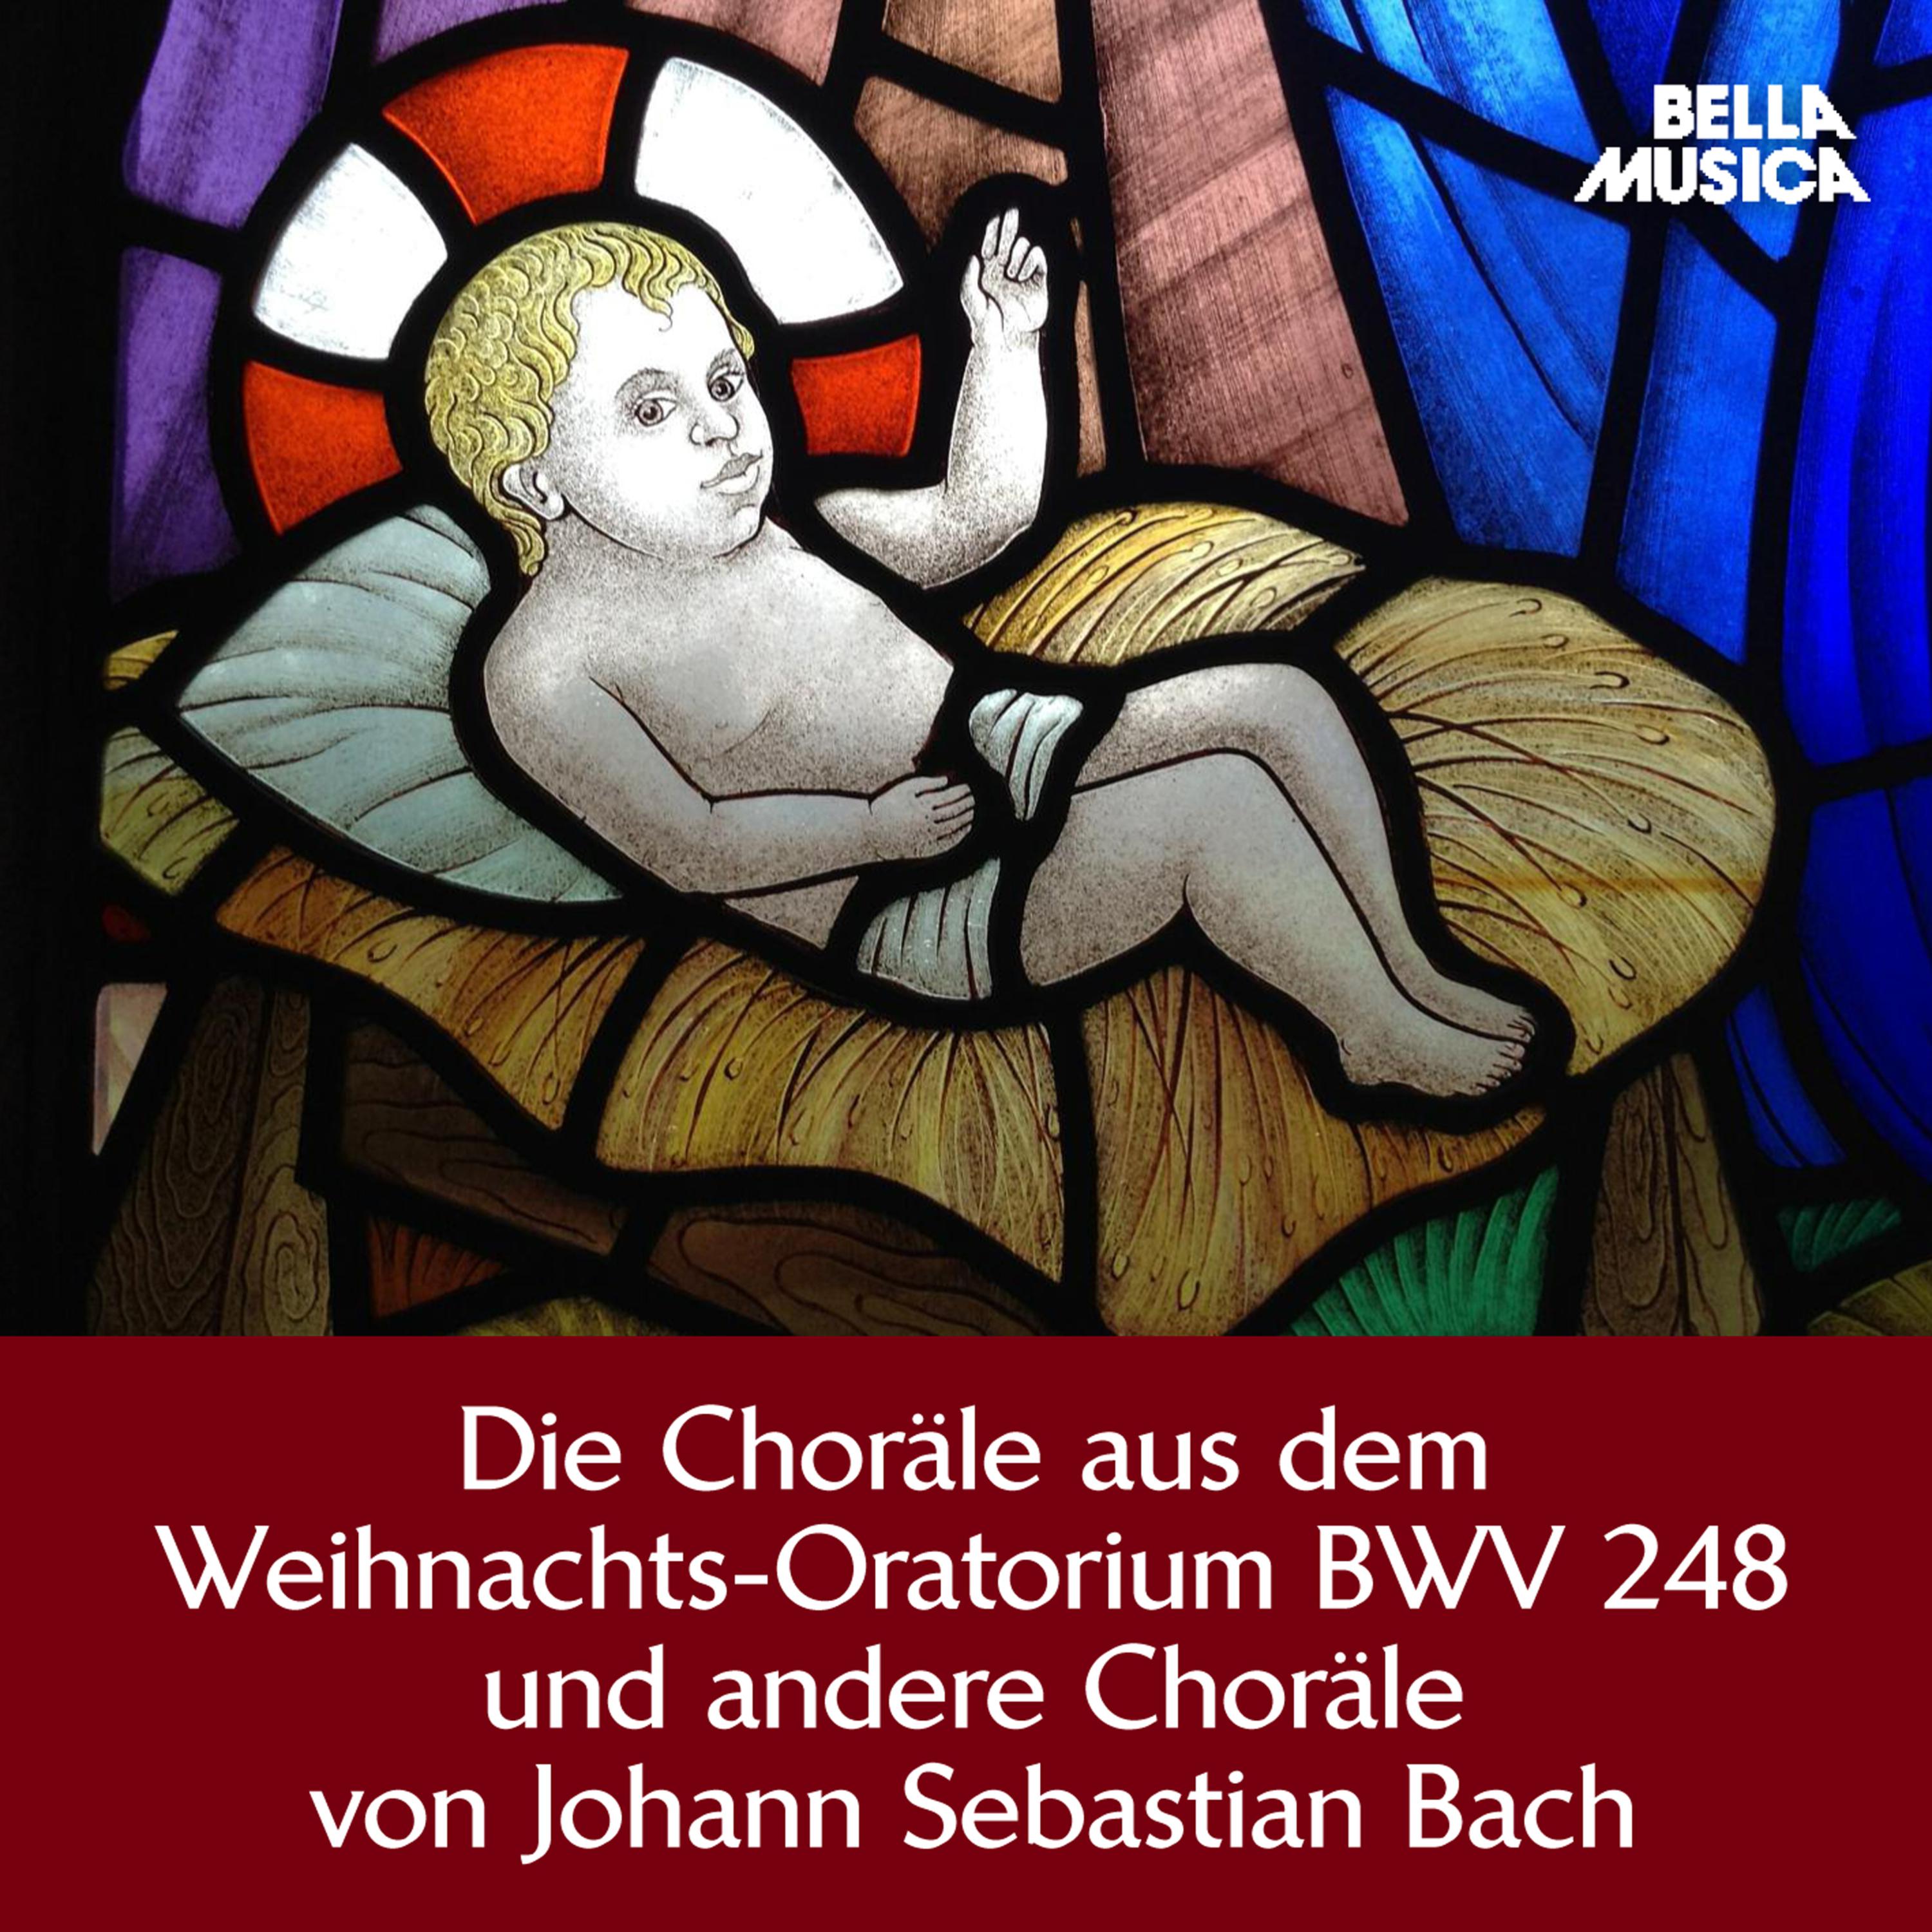 Weihnachts-Oratorium, BWV 248, Teil 5, Am Sonntage nach dem Neuer Jahr: Zwar ist solche Herzensstube